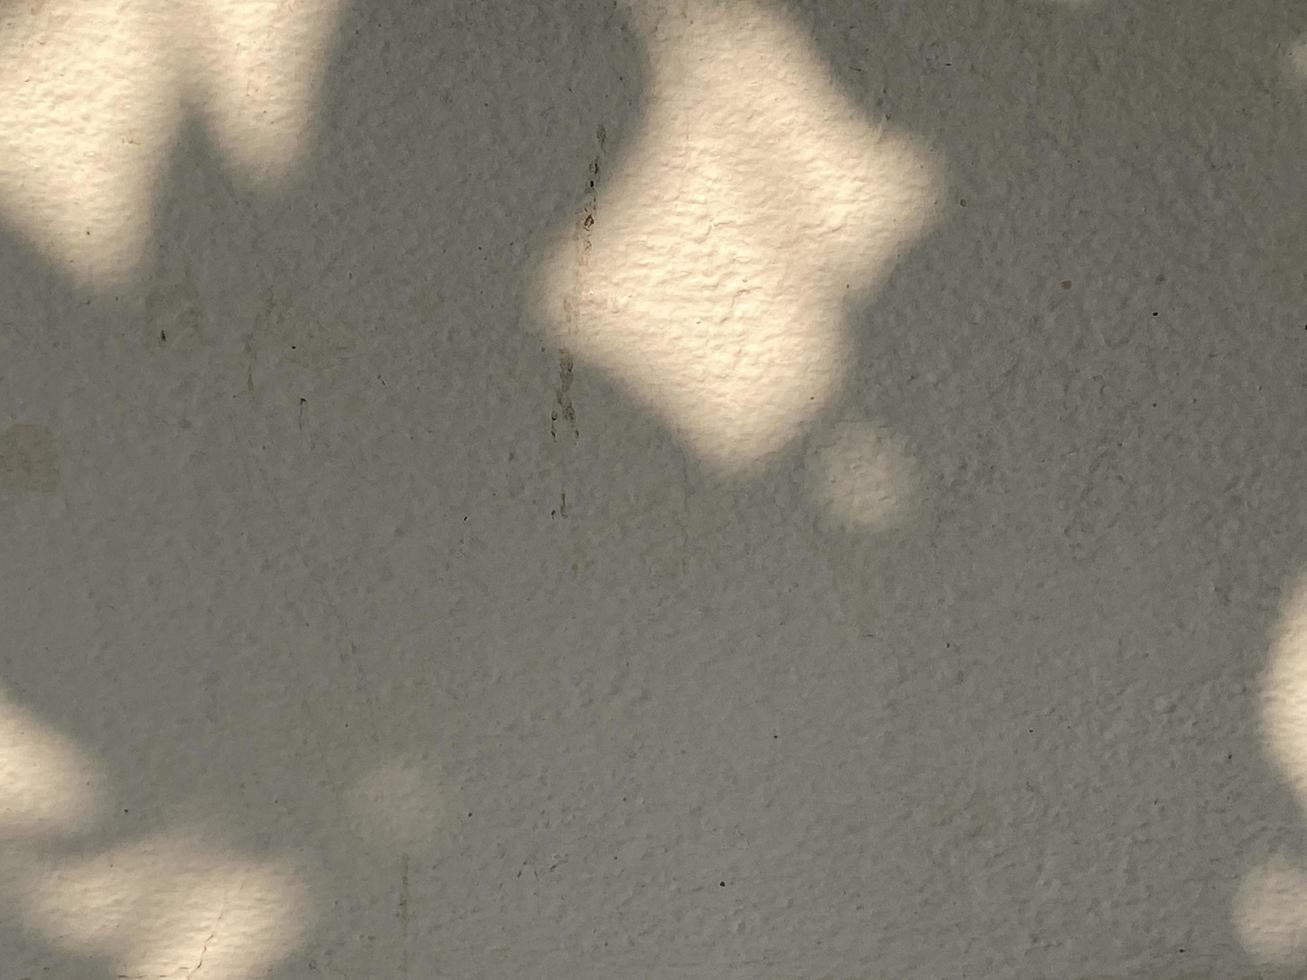 bladeren schaduw achtergrond Aan beton muur textuur, bladeren boom takken schaduw met zonlicht foto